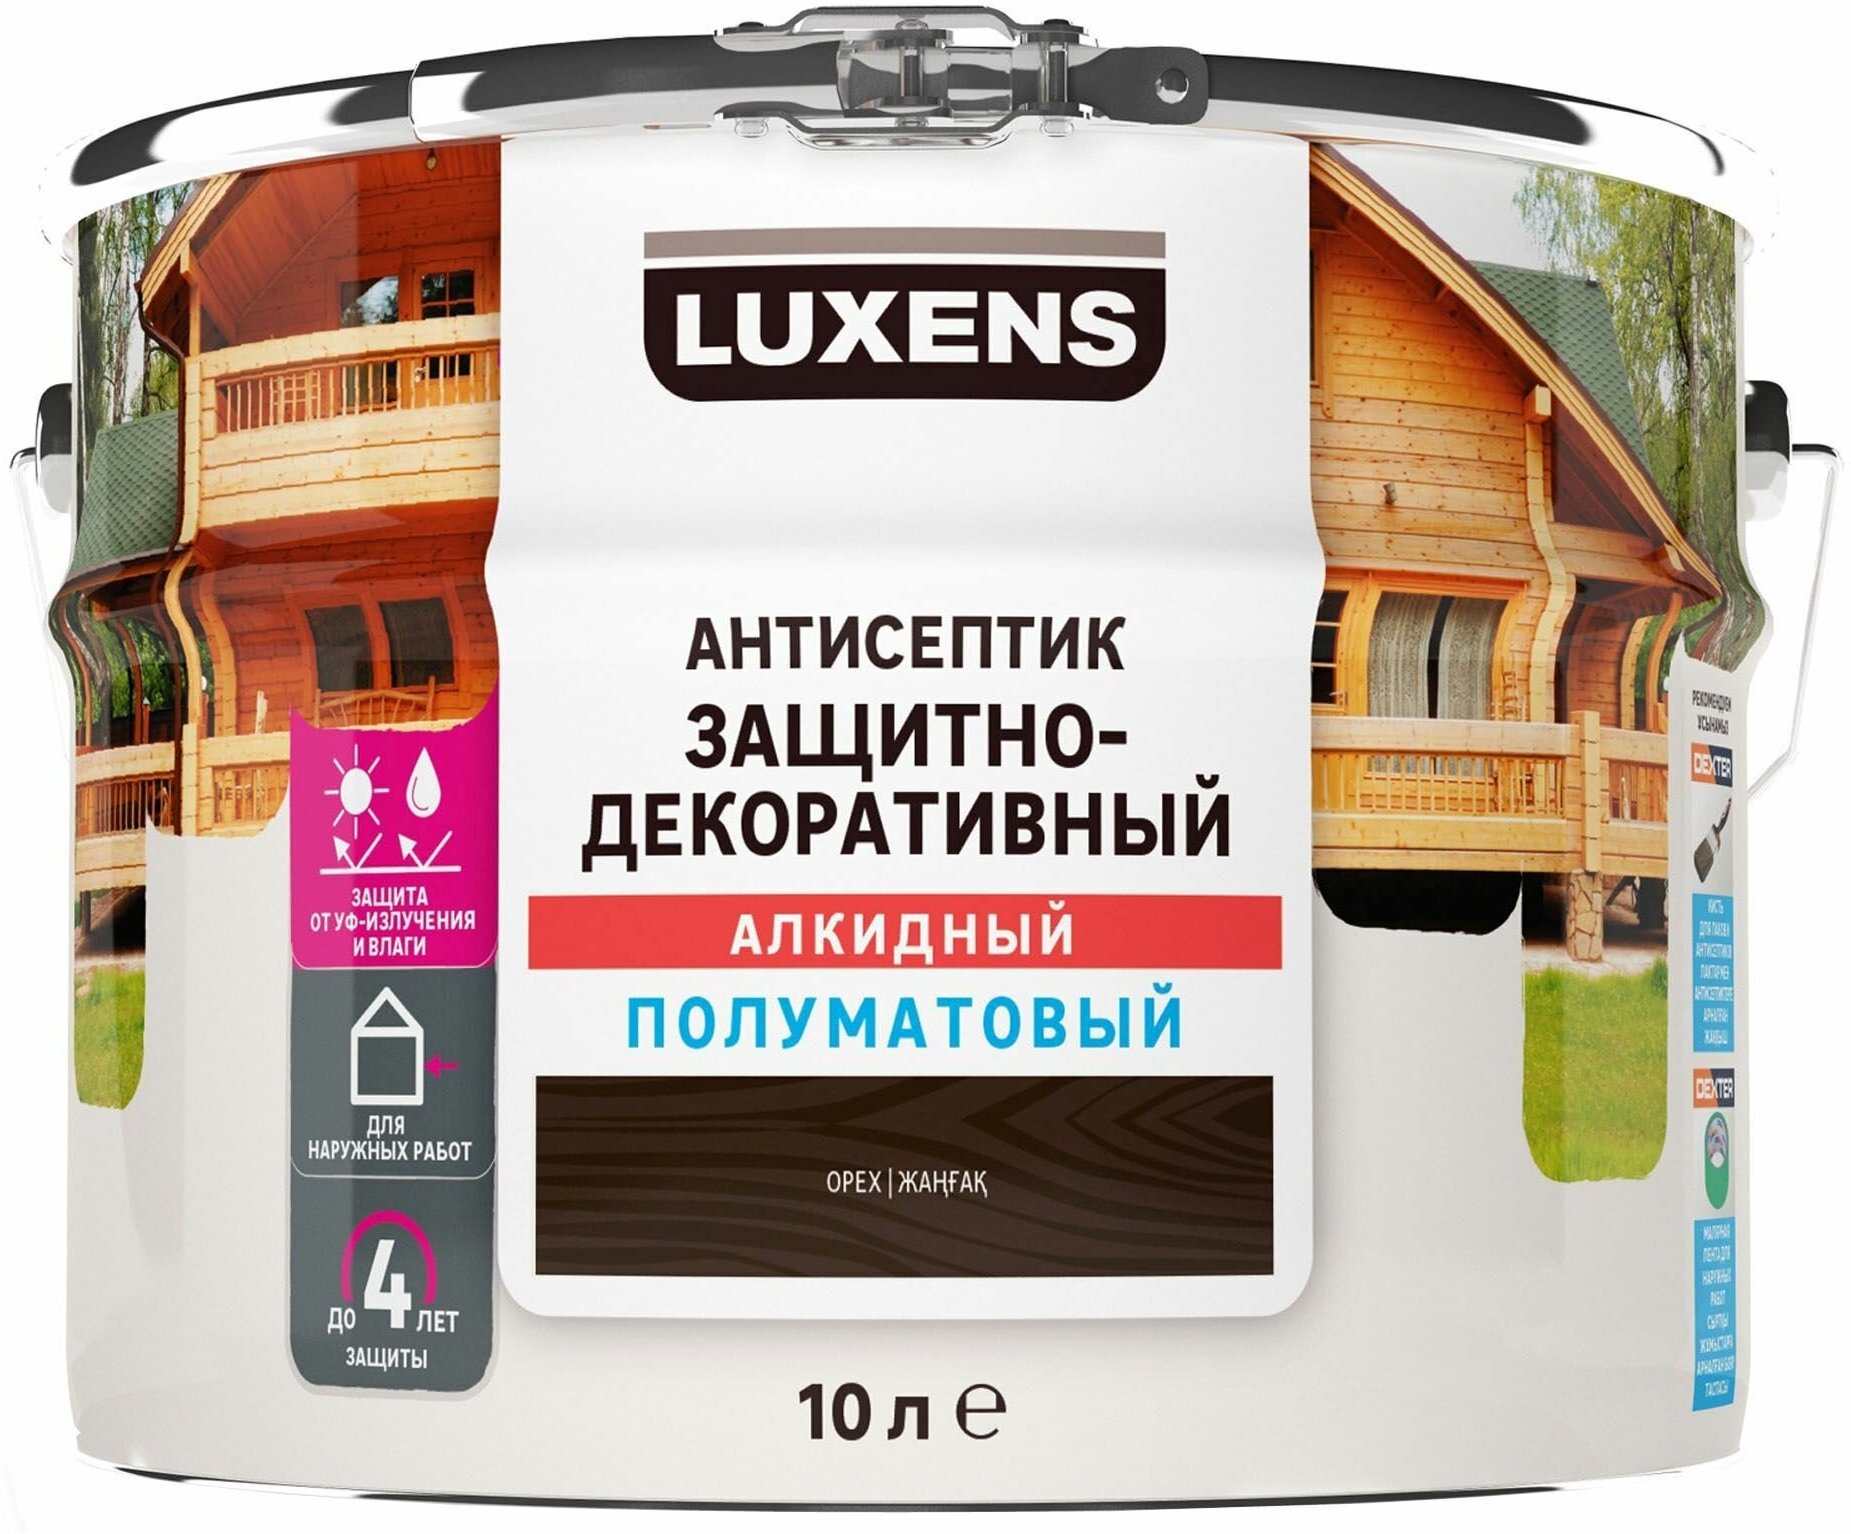 Антисептик Luxens полуматовый орех 10 л